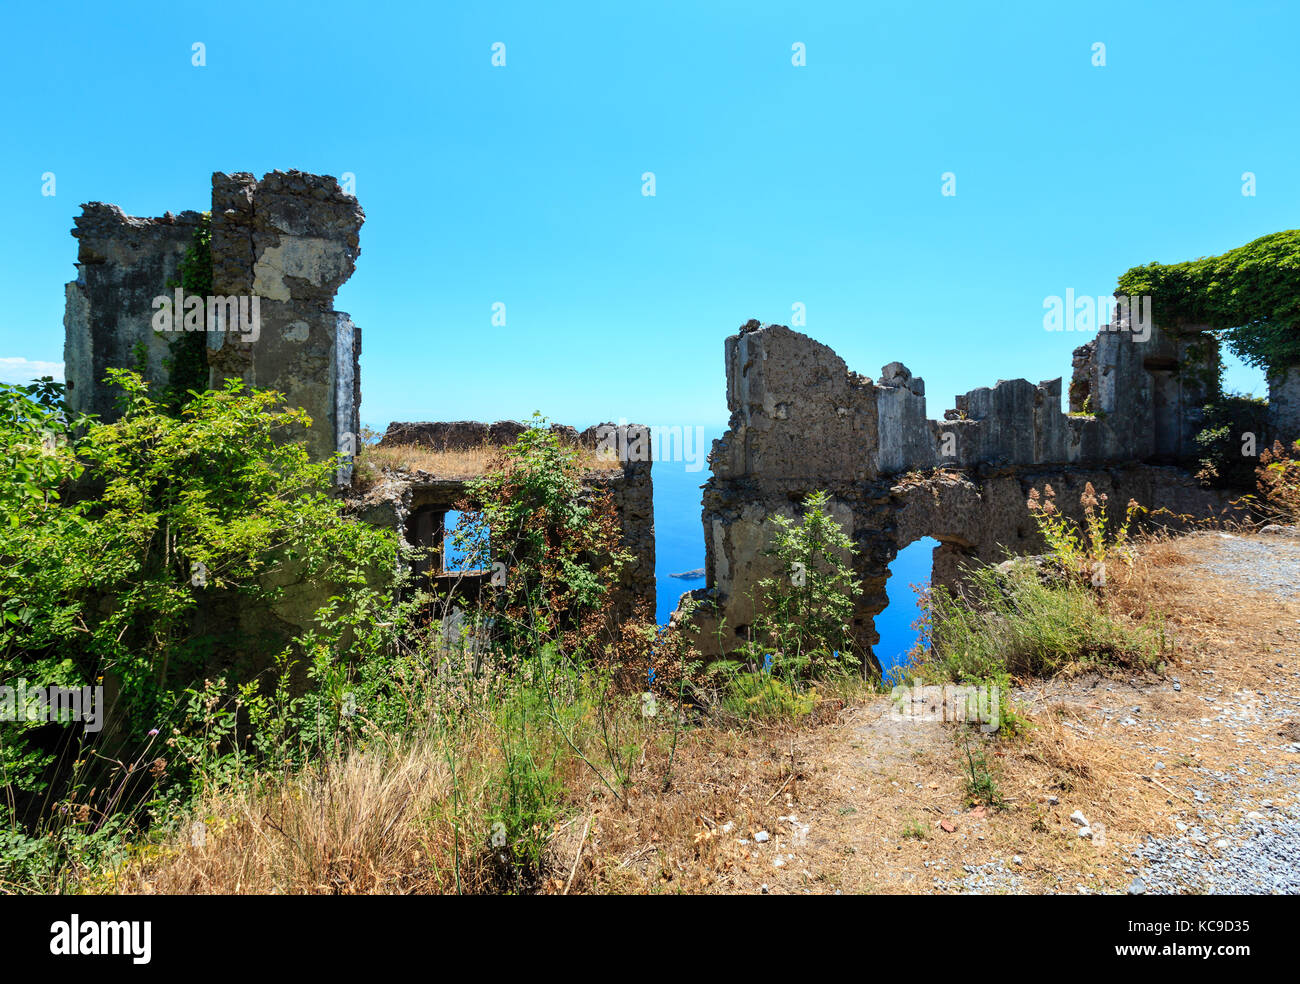 Les ruines de la colonie originale de maratea sur un escarpement rocheux juste en dessous de la statue du Christ Rédempteur sur la montagne San Biagio, mer tyrrhénienne Banque D'Images